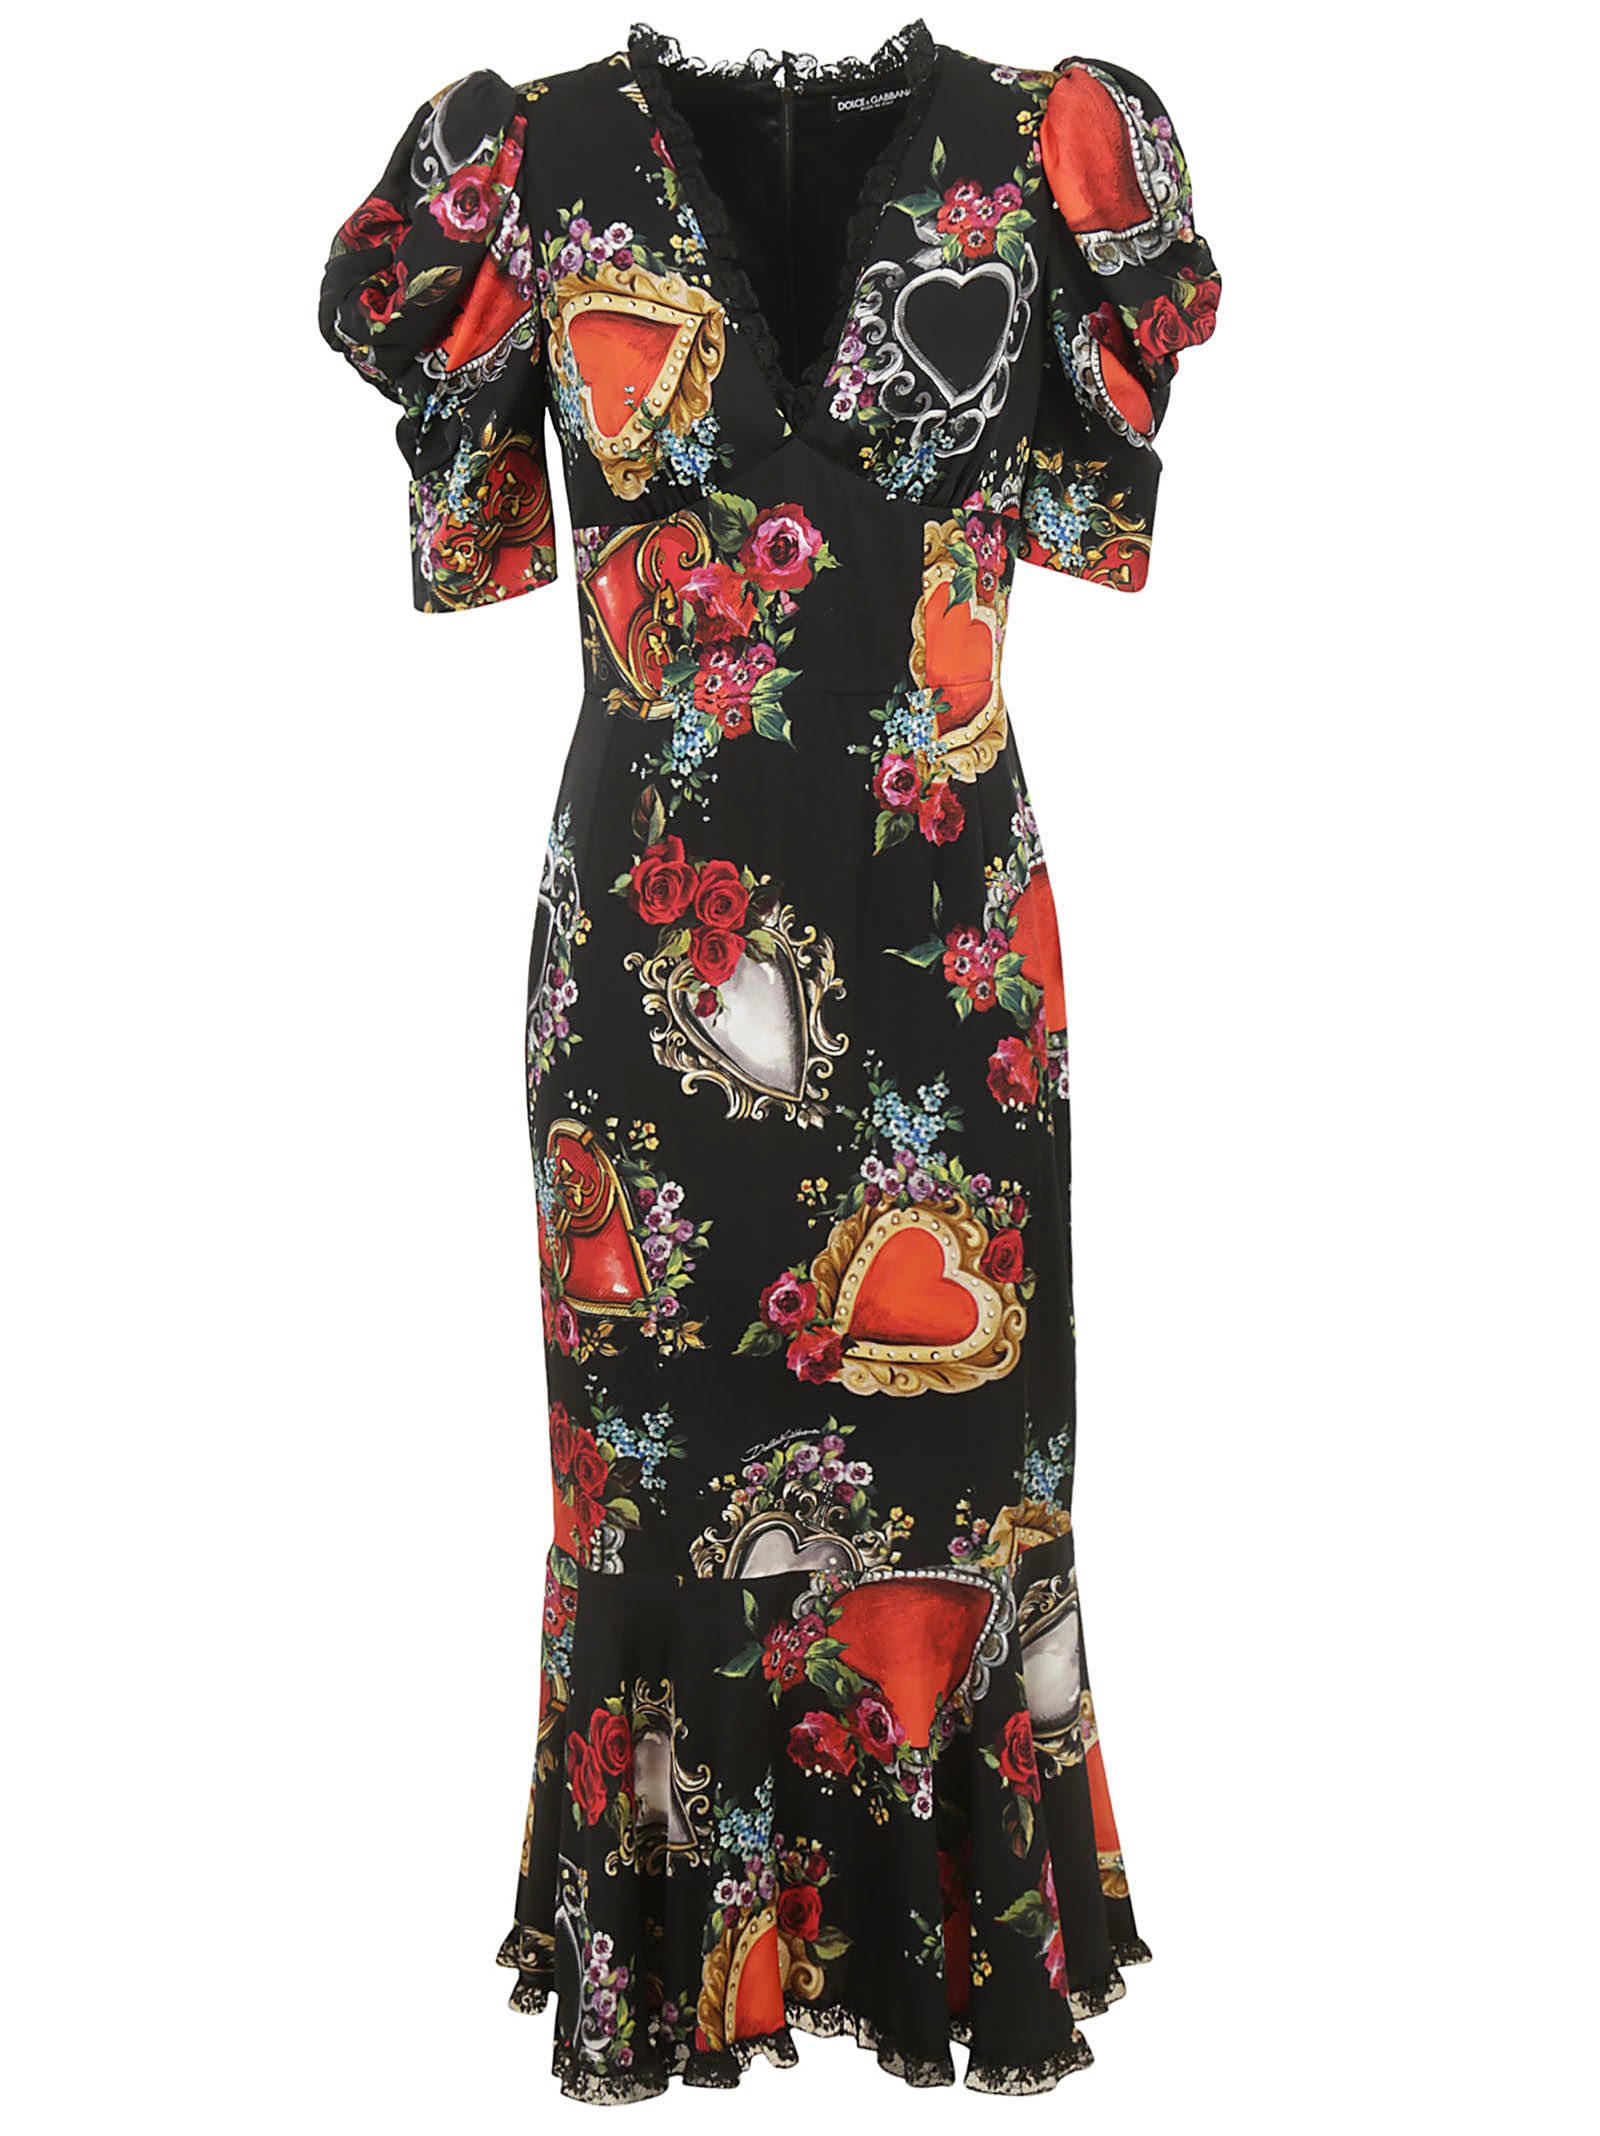 DOLCE & GABBANA Dolce & Gabbana Sacred Heart Print Dress,10930649